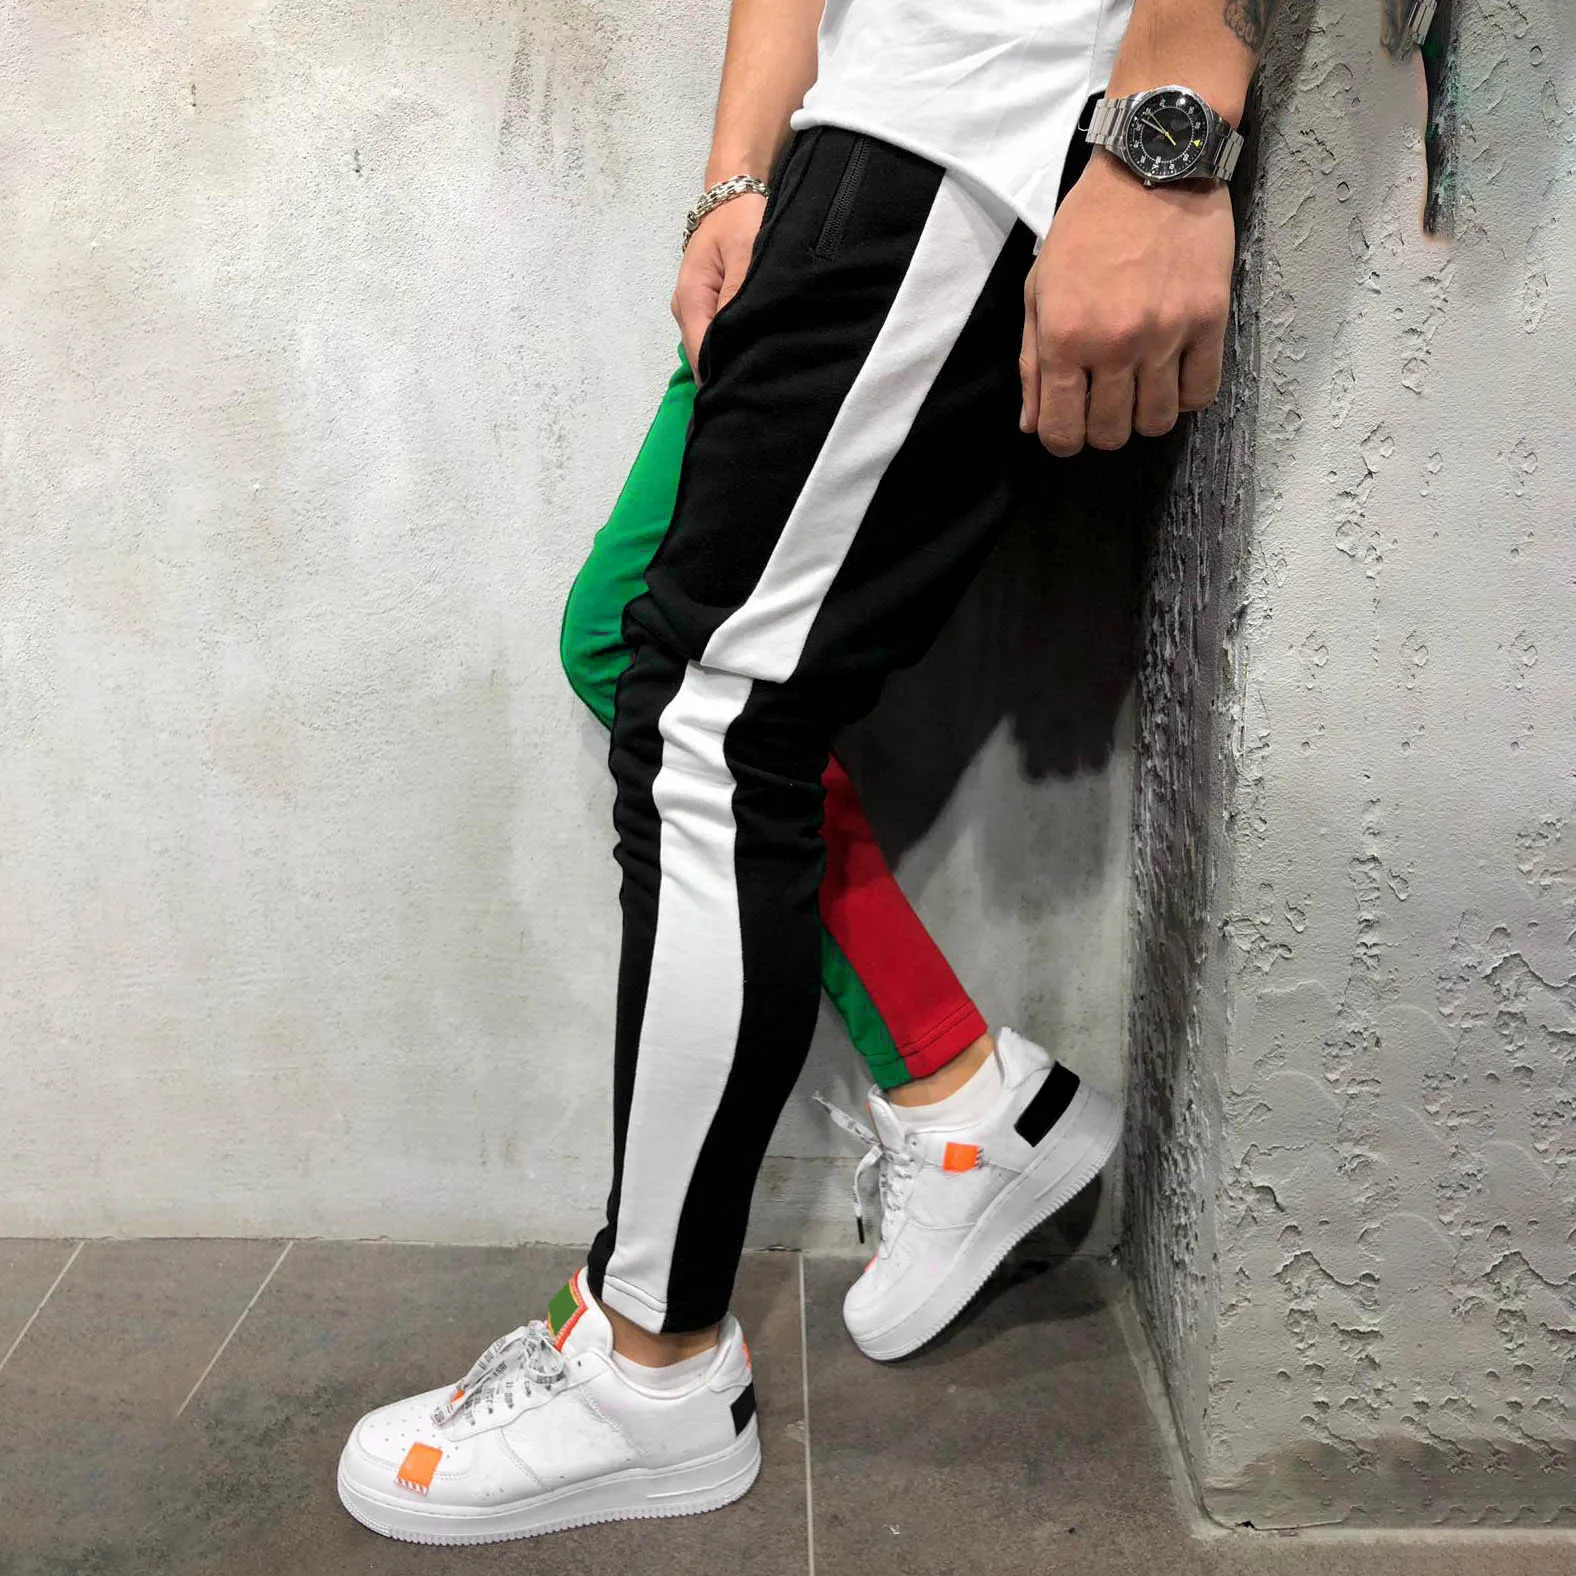 CYSINCOS мужские спортивные брюки прилегающего кроя на шнурке полосатые спортивные штаны Цветные Лоскутные бриджи для бега хип-хоп брюки длинные брюки